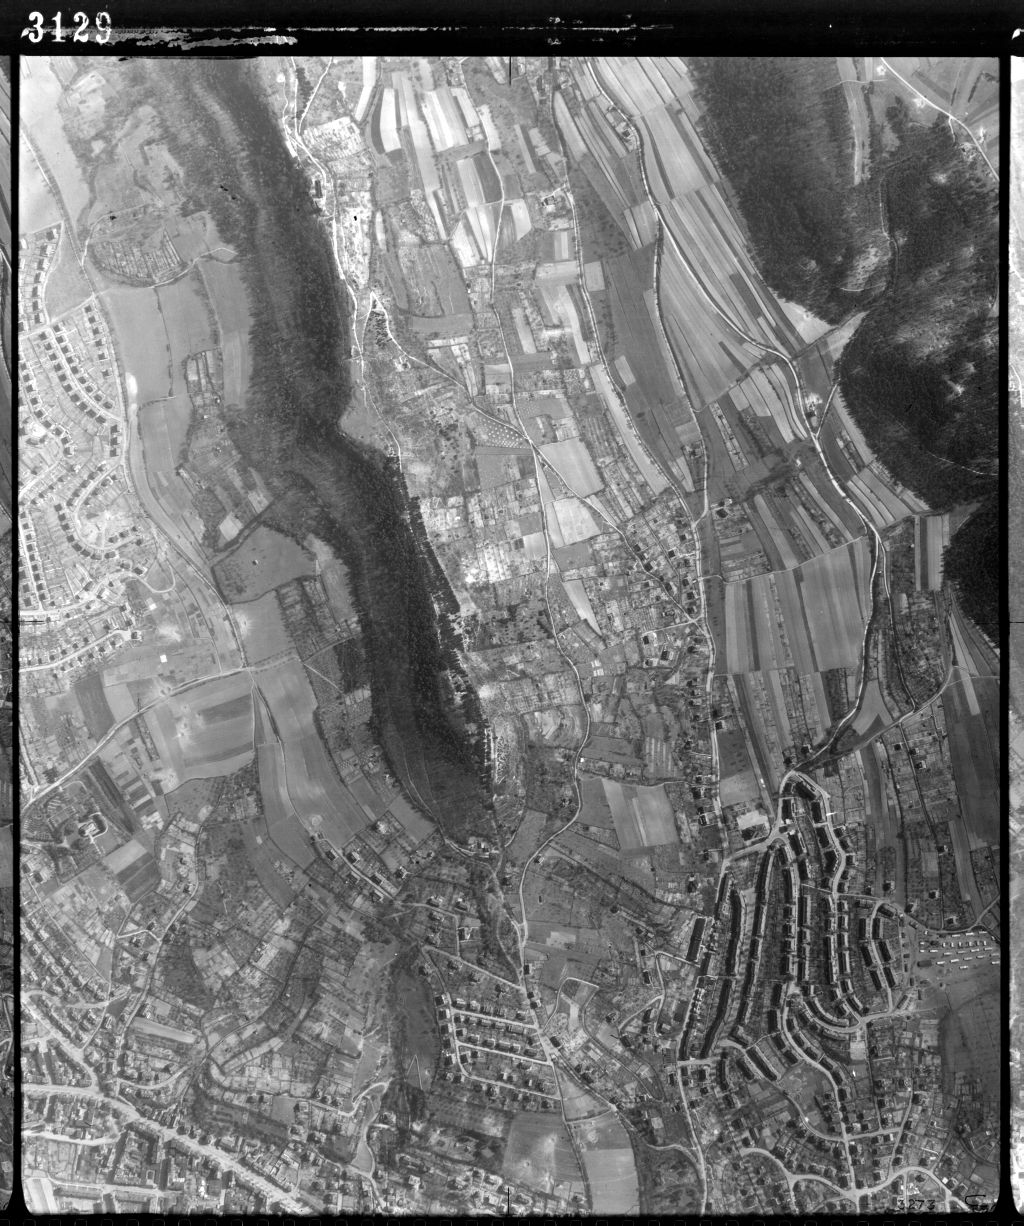 Bild 3129 vom 10.04.1945 zeigt das komplette Lehrpfadgebiet bis ins Detail.